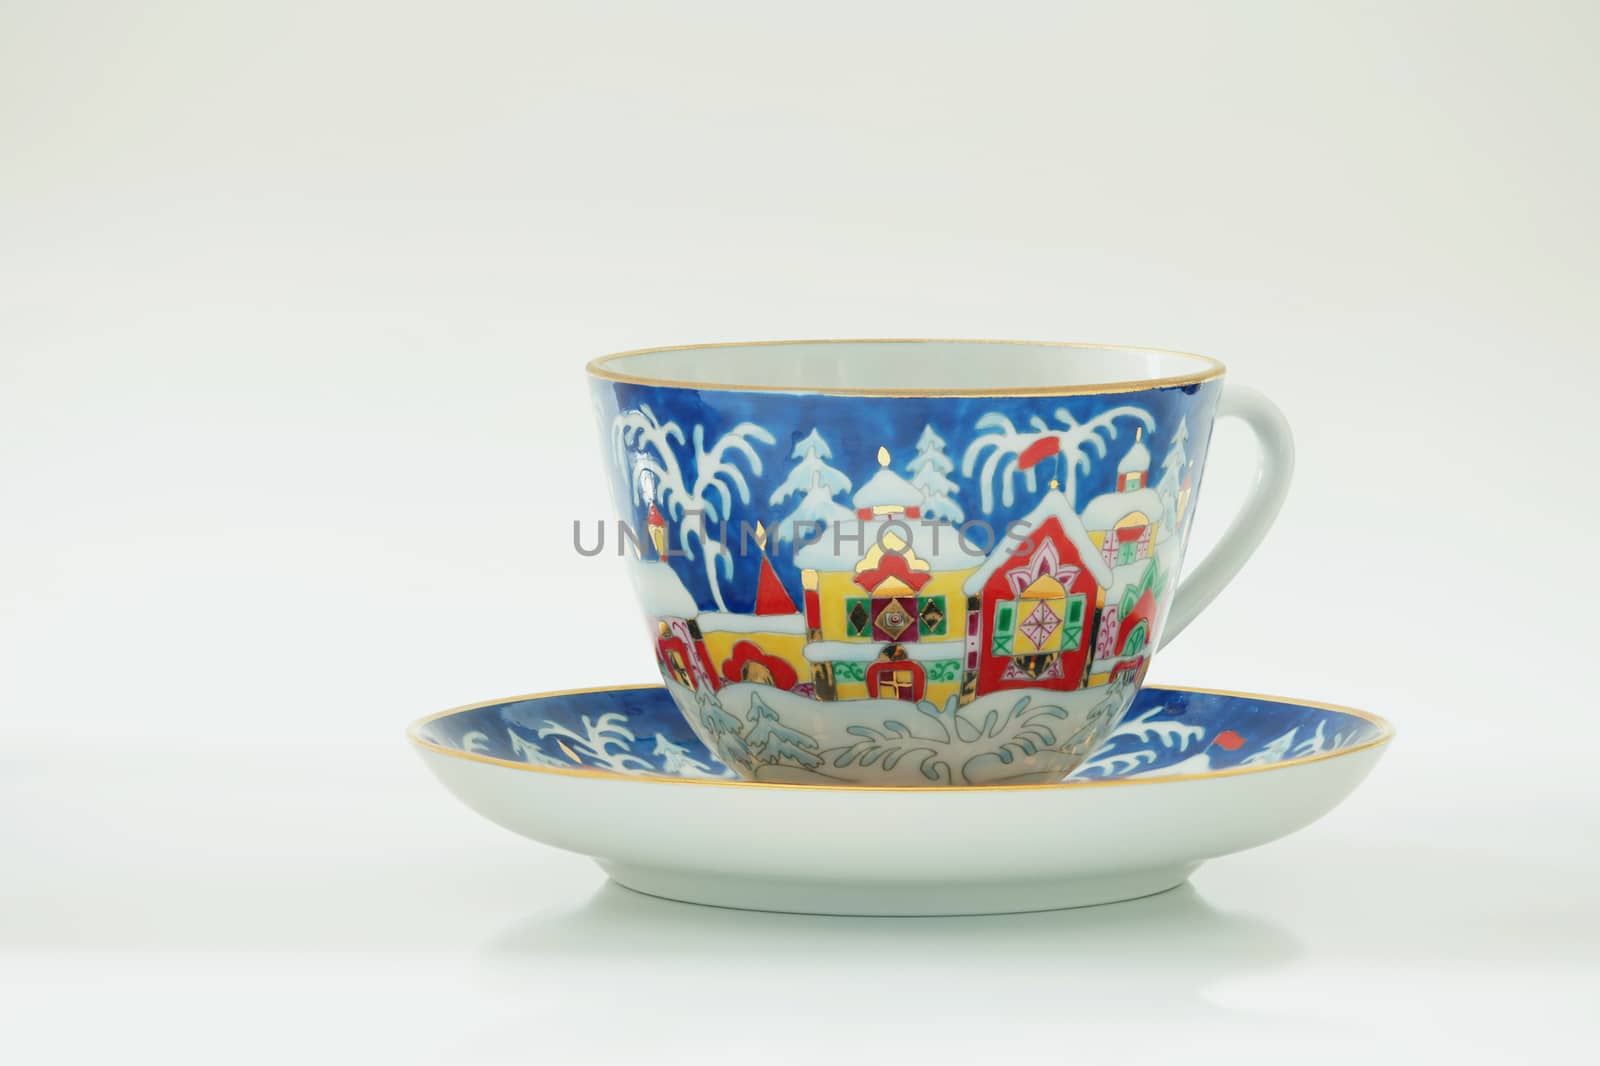  winter pattern at a tea mug